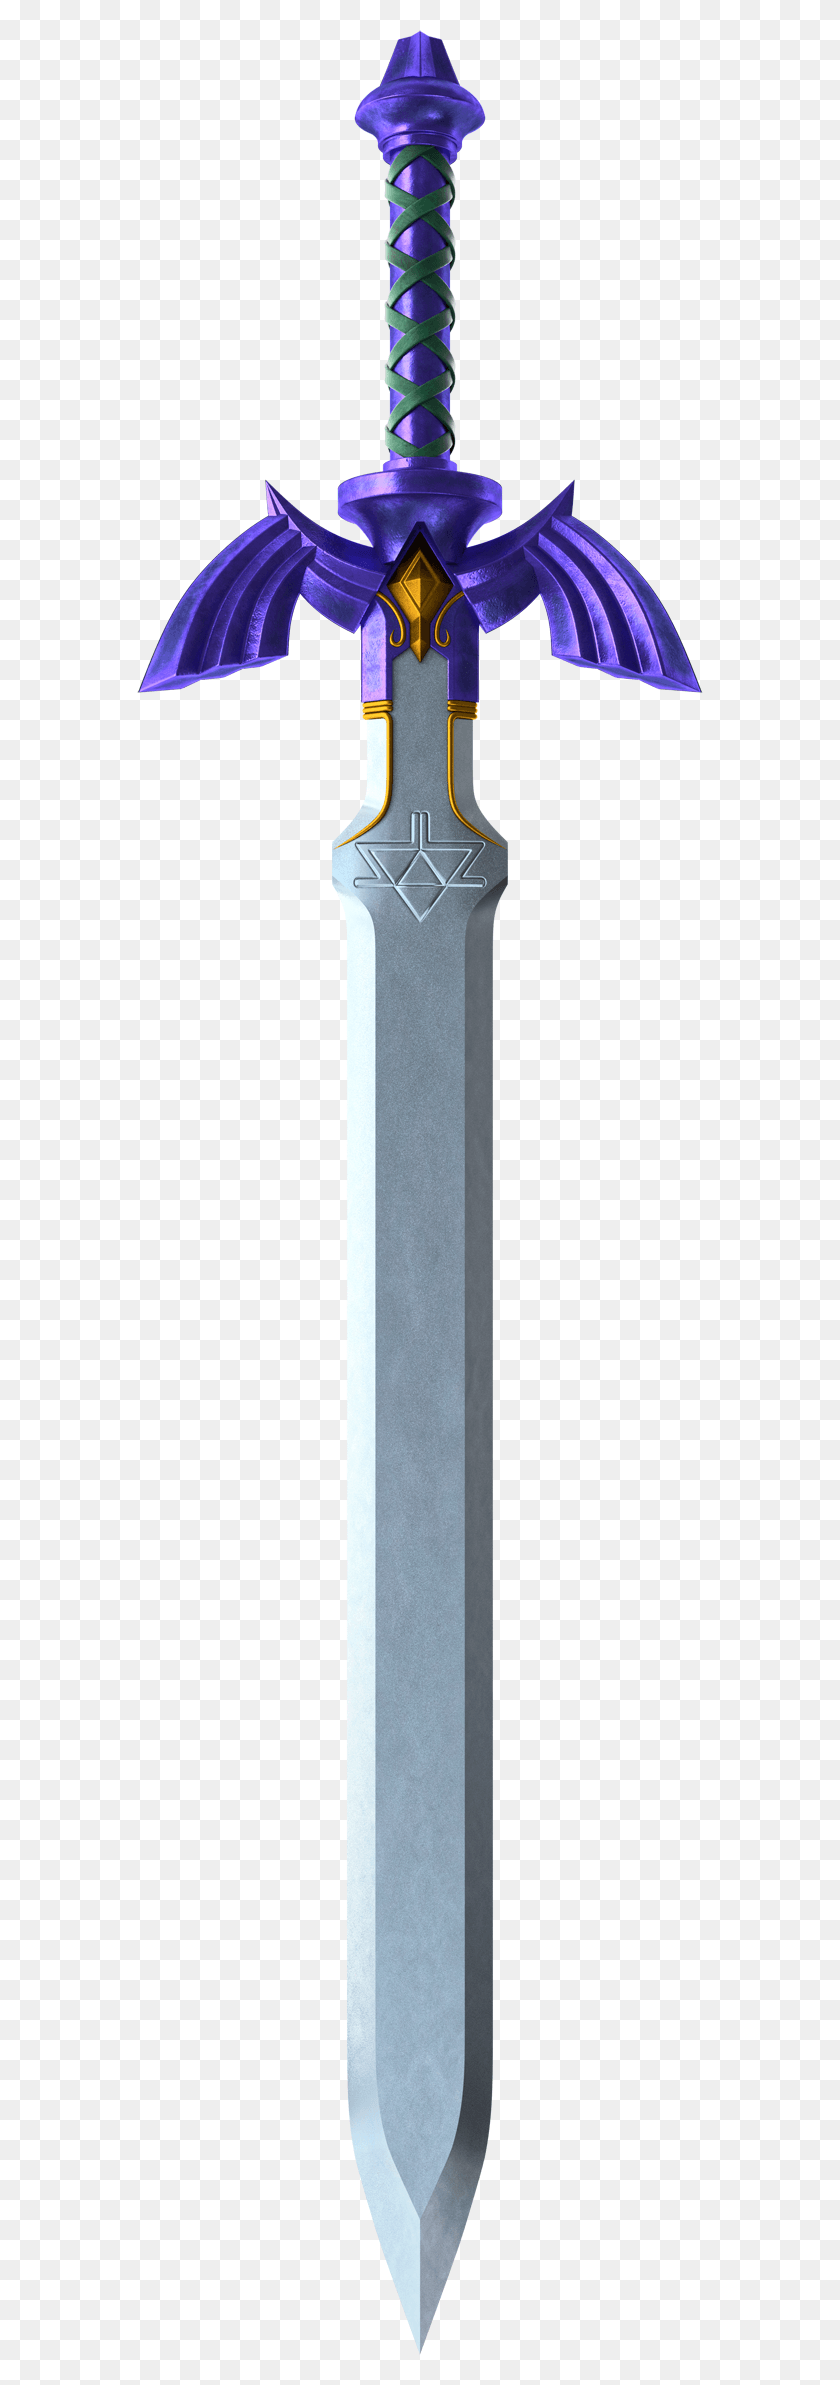 566x2325 Descargar Png Tphd Master Sword Obra De Arte 1 L Pe De Legende Zelda, Arma, Arma, Blade Hd Png